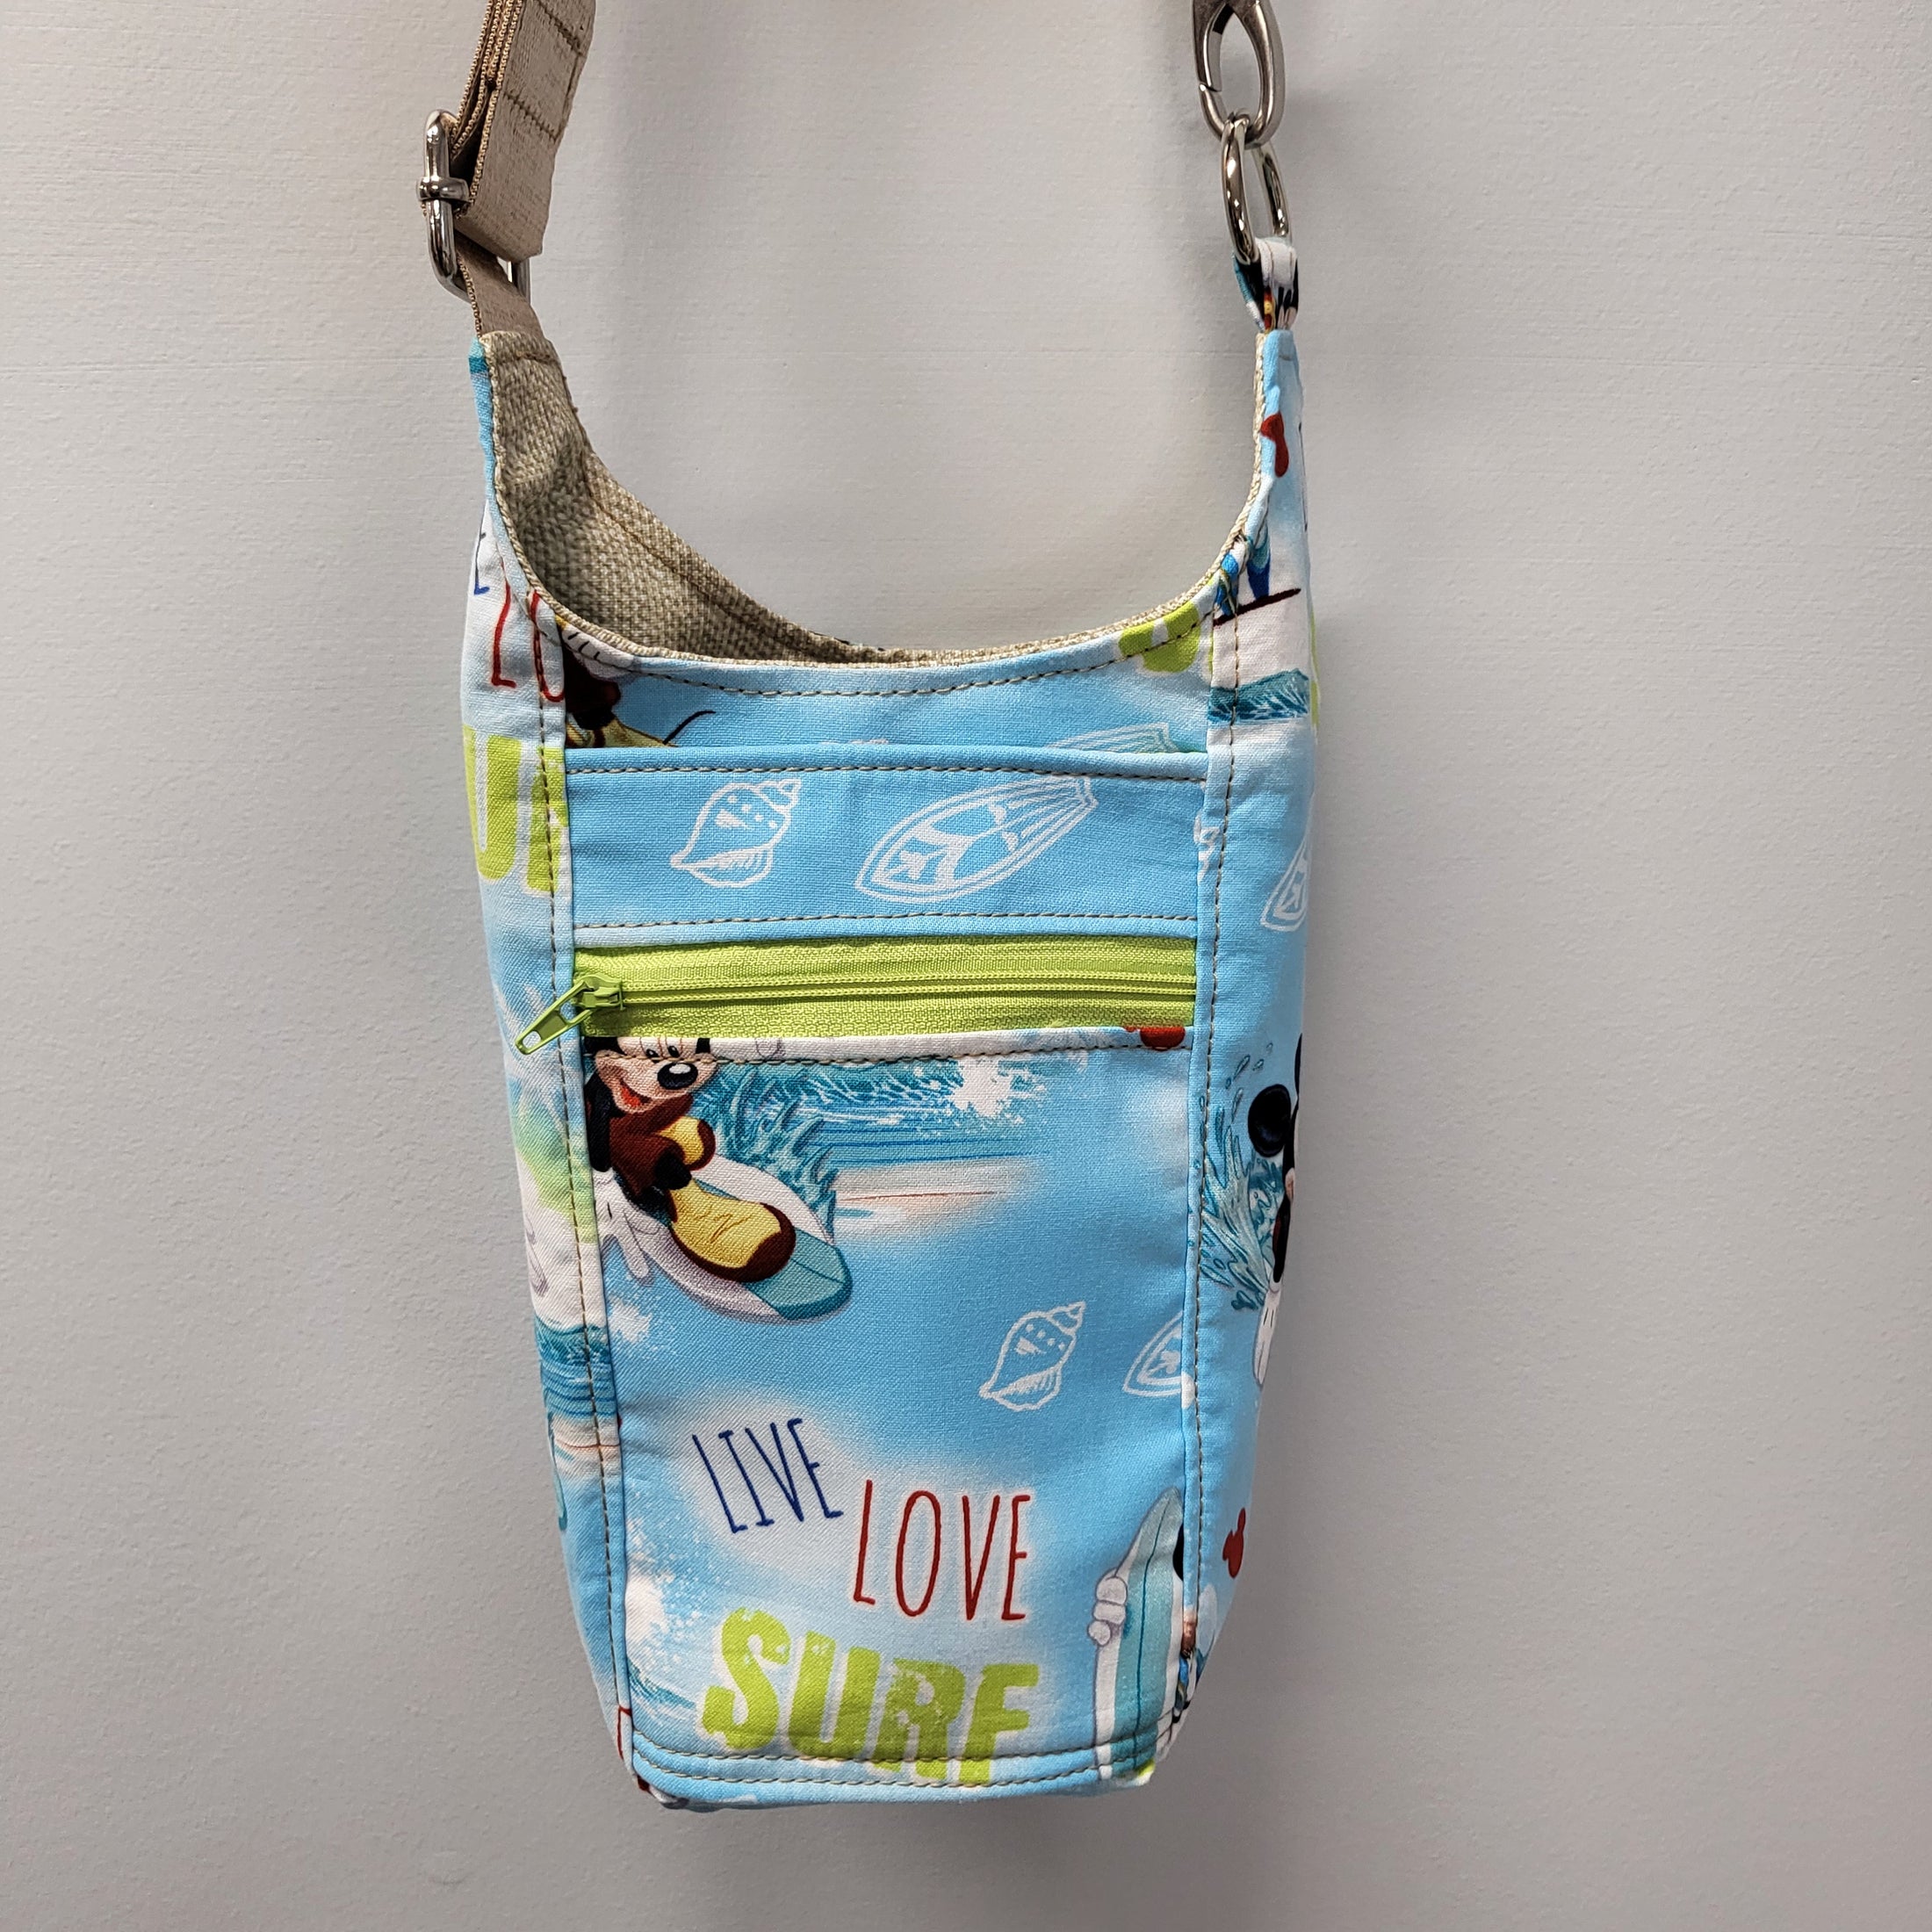 Live love surf drink carrier bag with adjustable strap. 